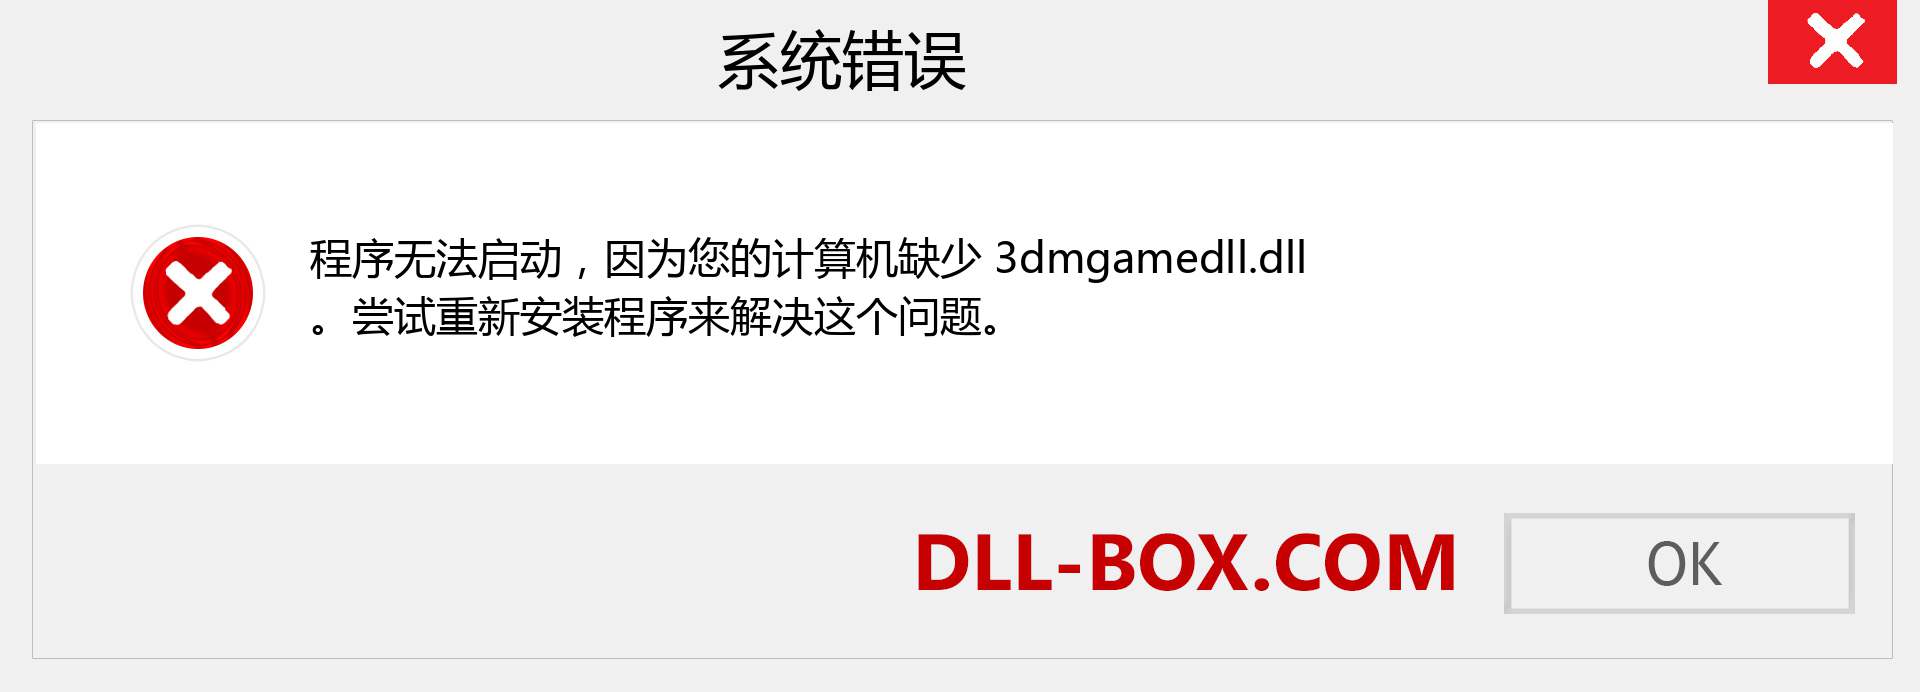 3dmgamedll.dll 文件丢失？。 适用于 Windows 7、8、10 的下载 - 修复 Windows、照片、图像上的 3dmgamedll dll 丢失错误